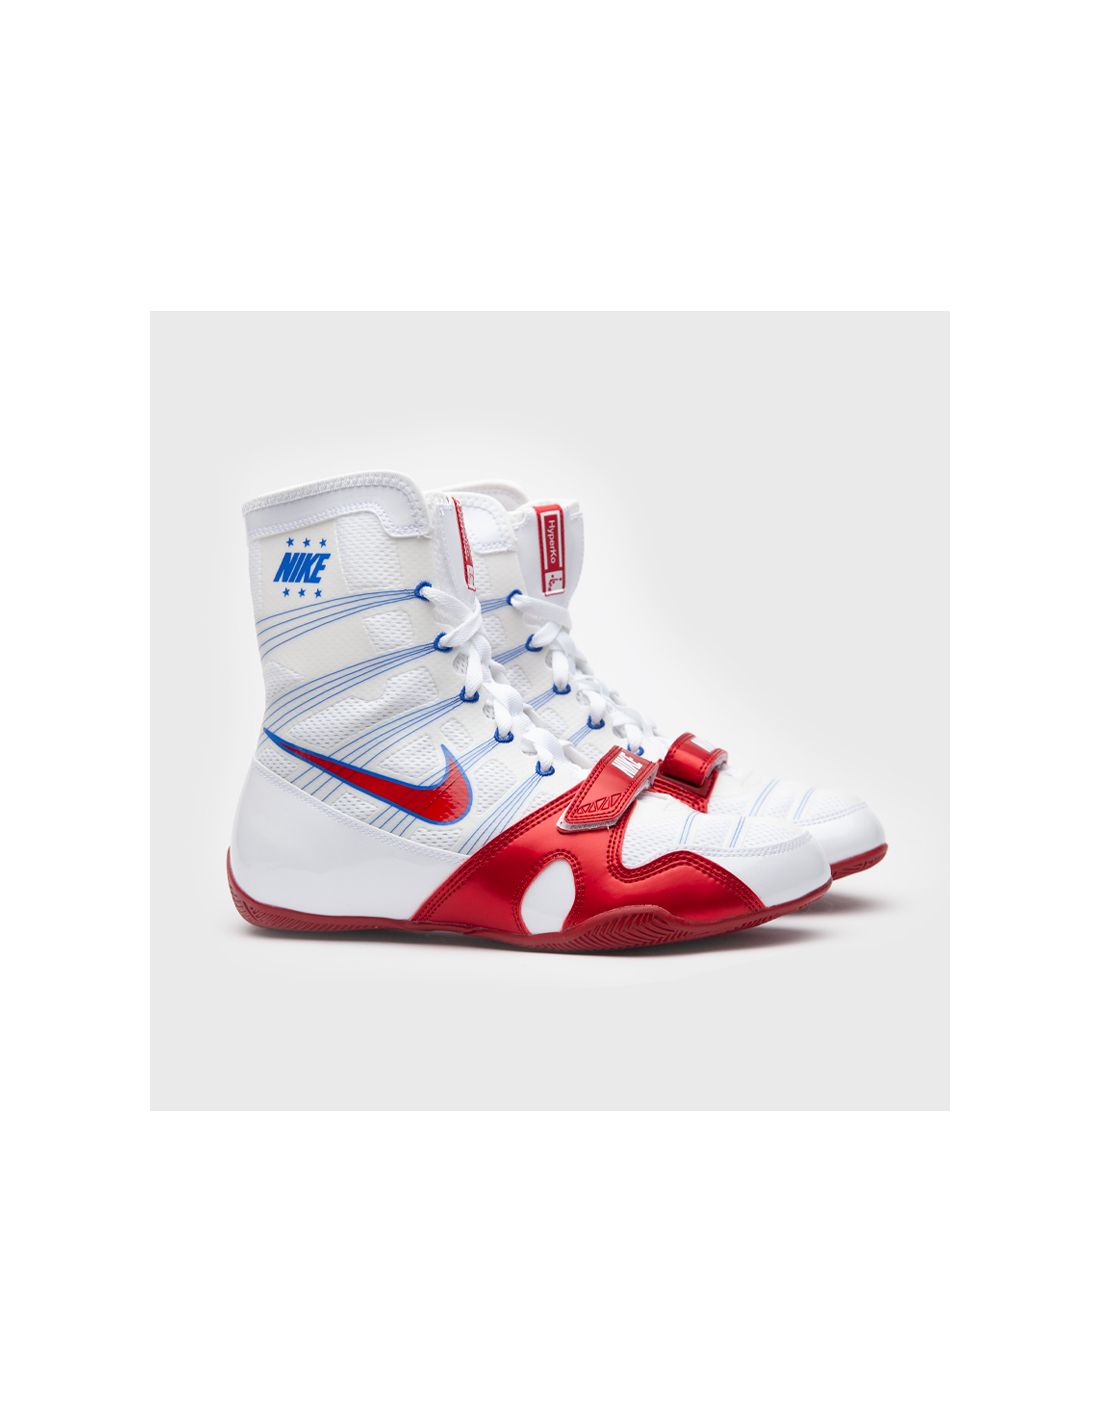 Botas de boxeo Nike Hyperko blanco/rojo